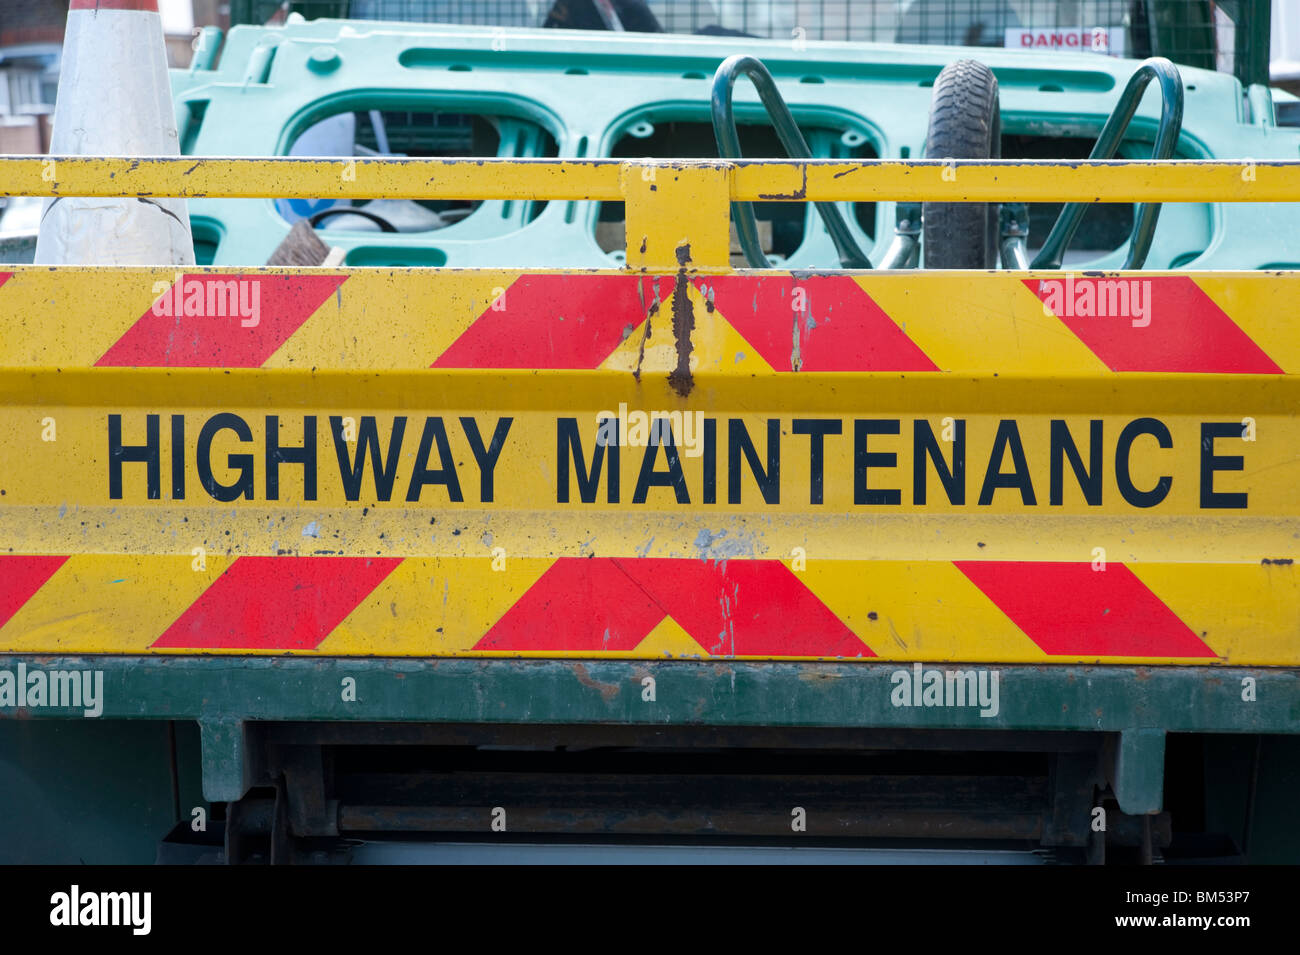 Highway maintenance truck, England, Britain, UK Stock Photo